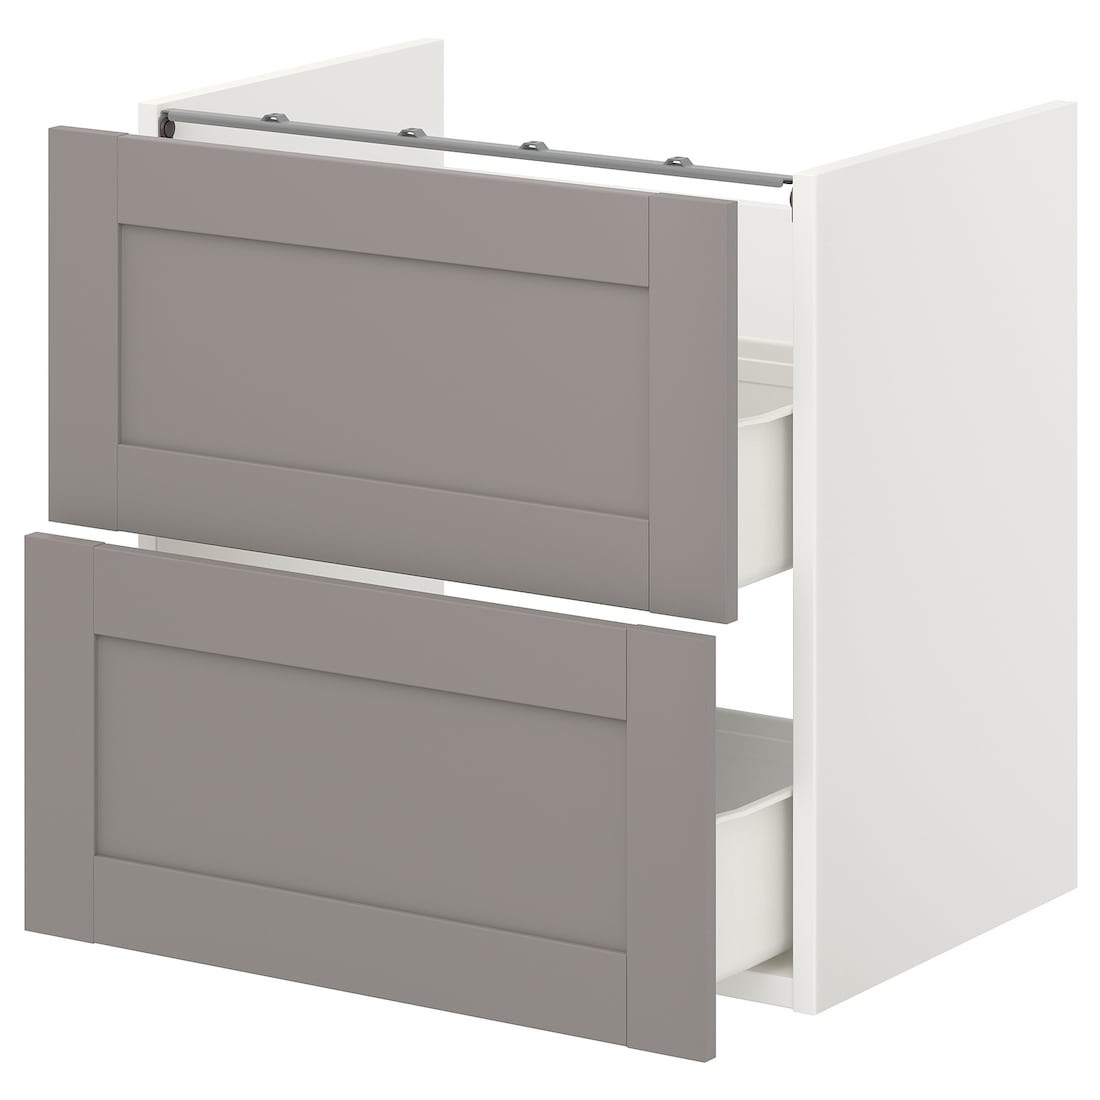 IKEA ENHET ЭНХЕТ Напольный шкаф под раковину с 2 ящиками, белый / серая рамка, 60x42x60 см 19322345 193.223.45